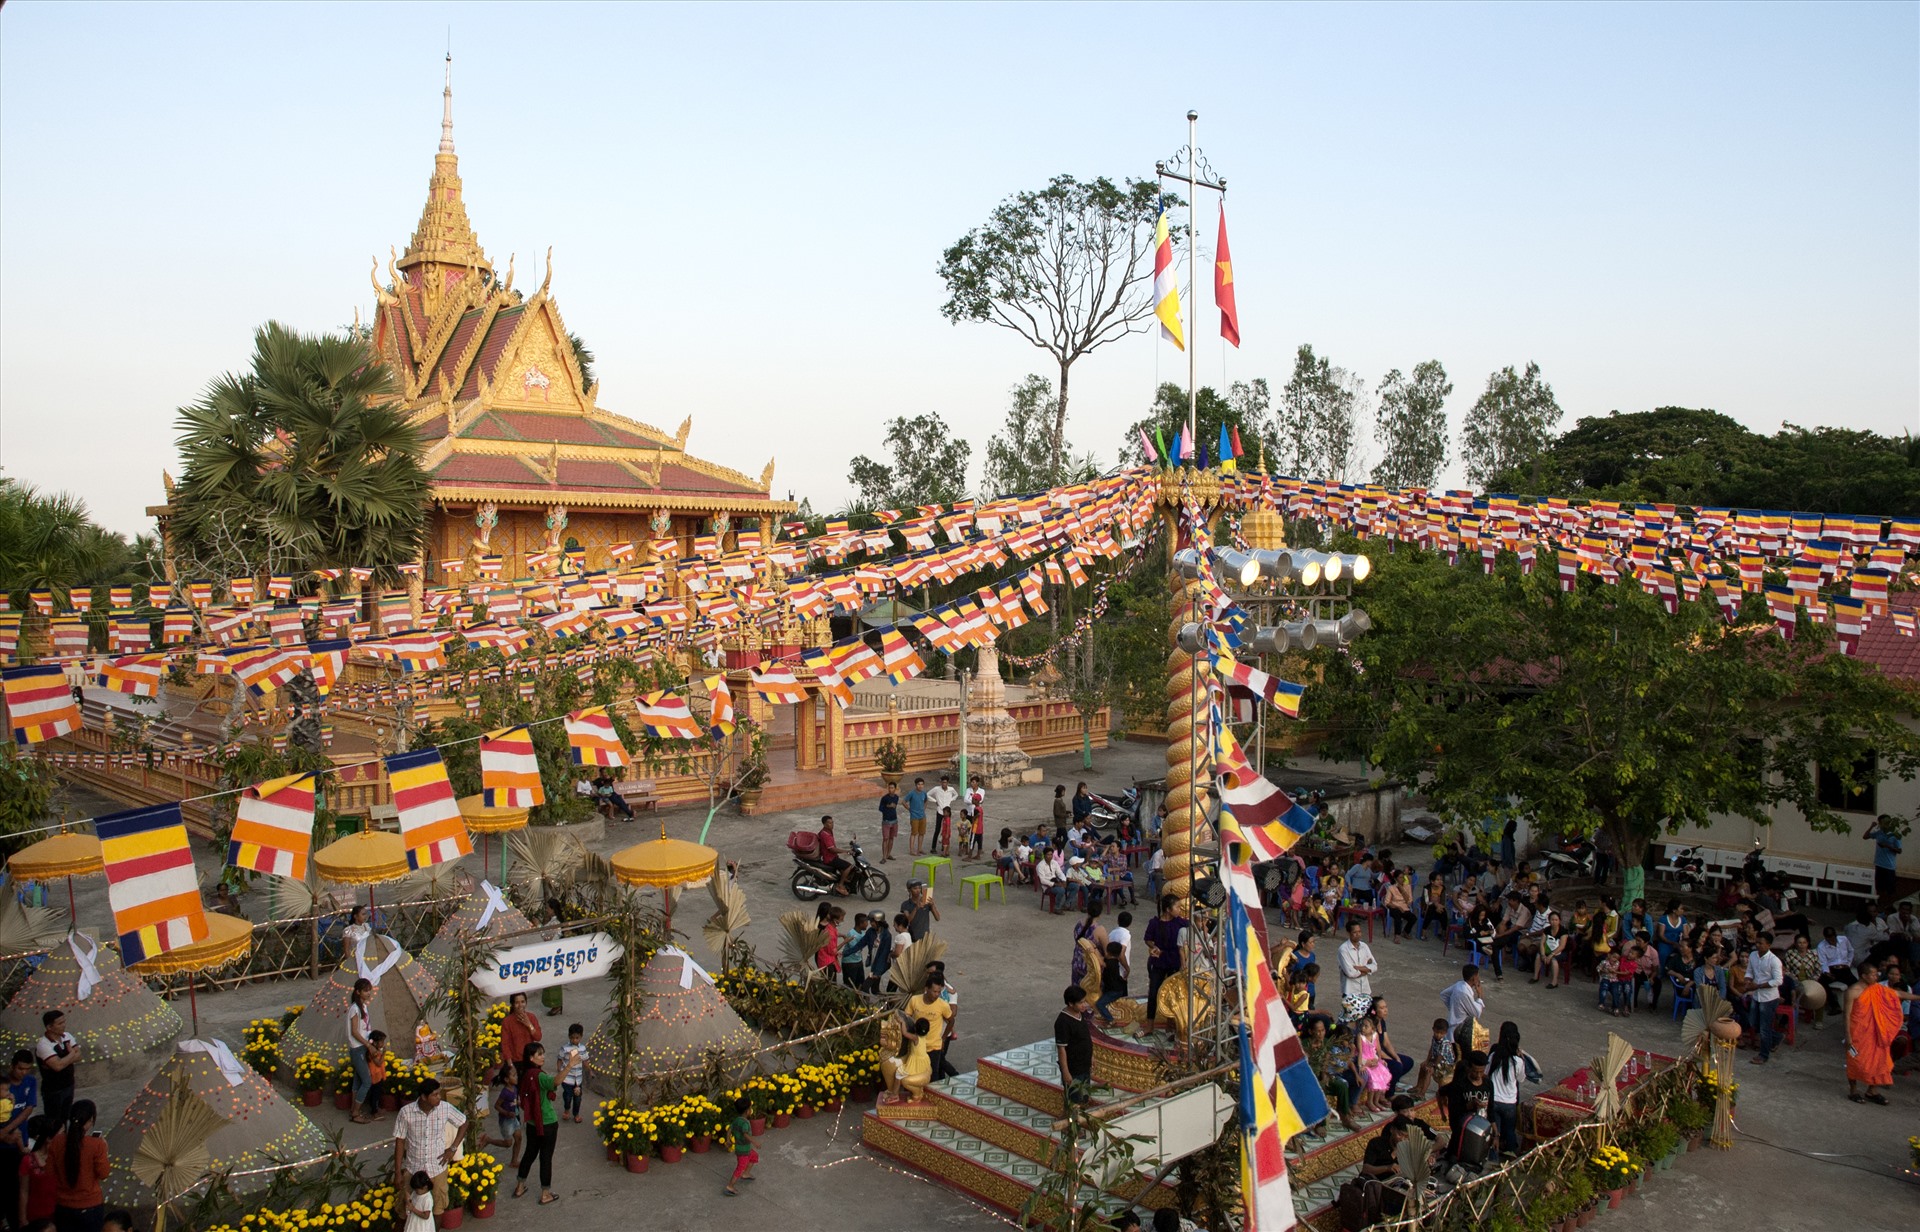 Chol Chnam Thmay là lễ hội mừng năm mới theo lịch cổ truyền của dân tộc Khmer, diễn ra vào trung tuần tháng 4 hàng năm. Riêng năm nay, lễ hội diễn ra từ 14 đến 16.4